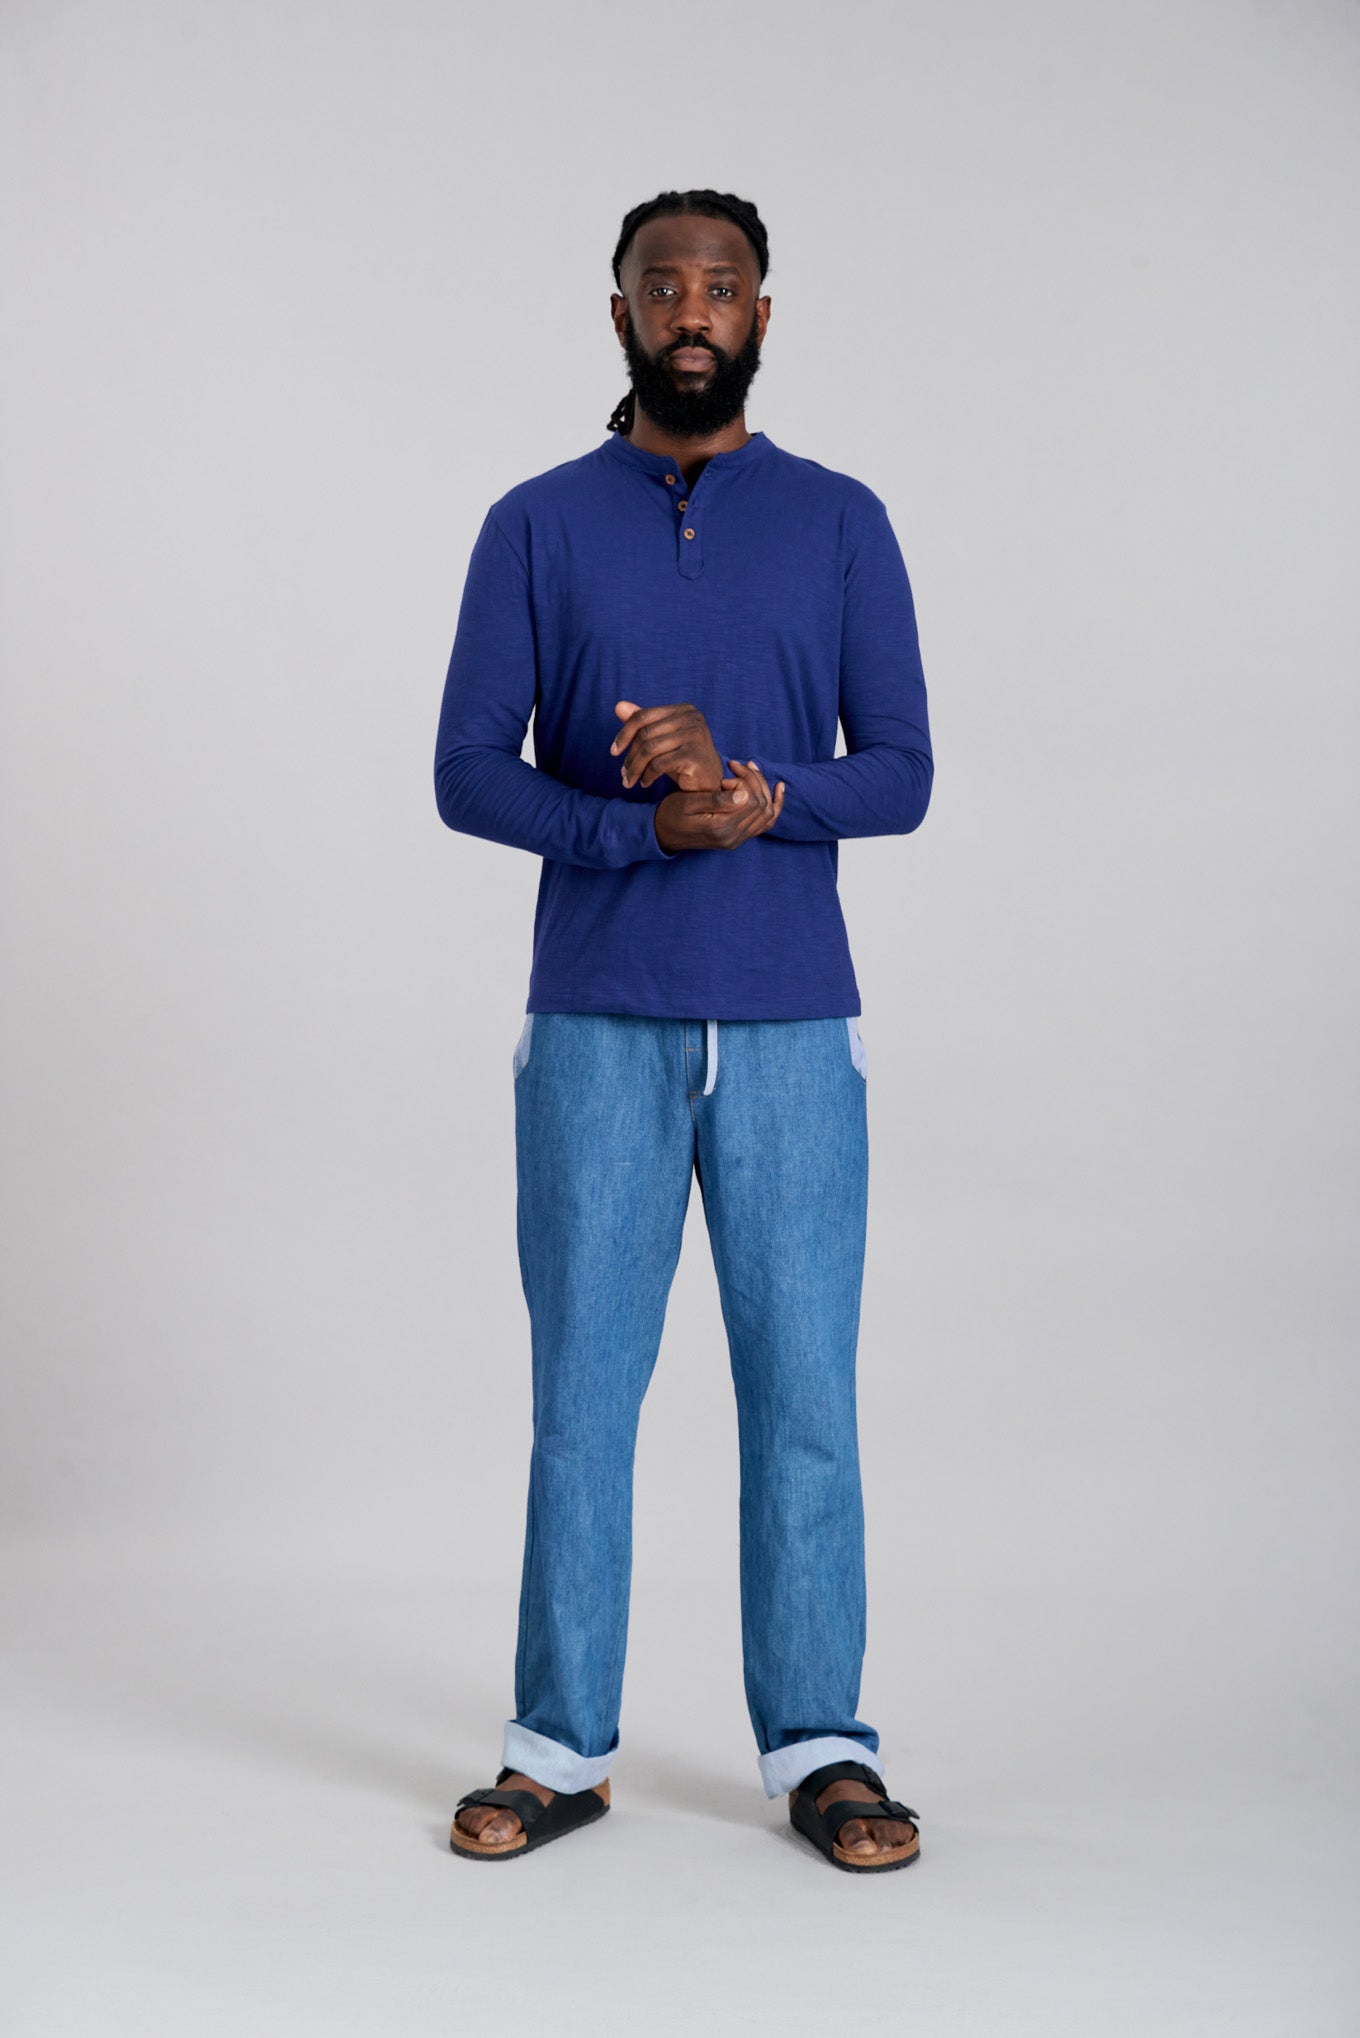 Blauer Sweater ARLO aus 100% Bio-Baumwolle von Komodo